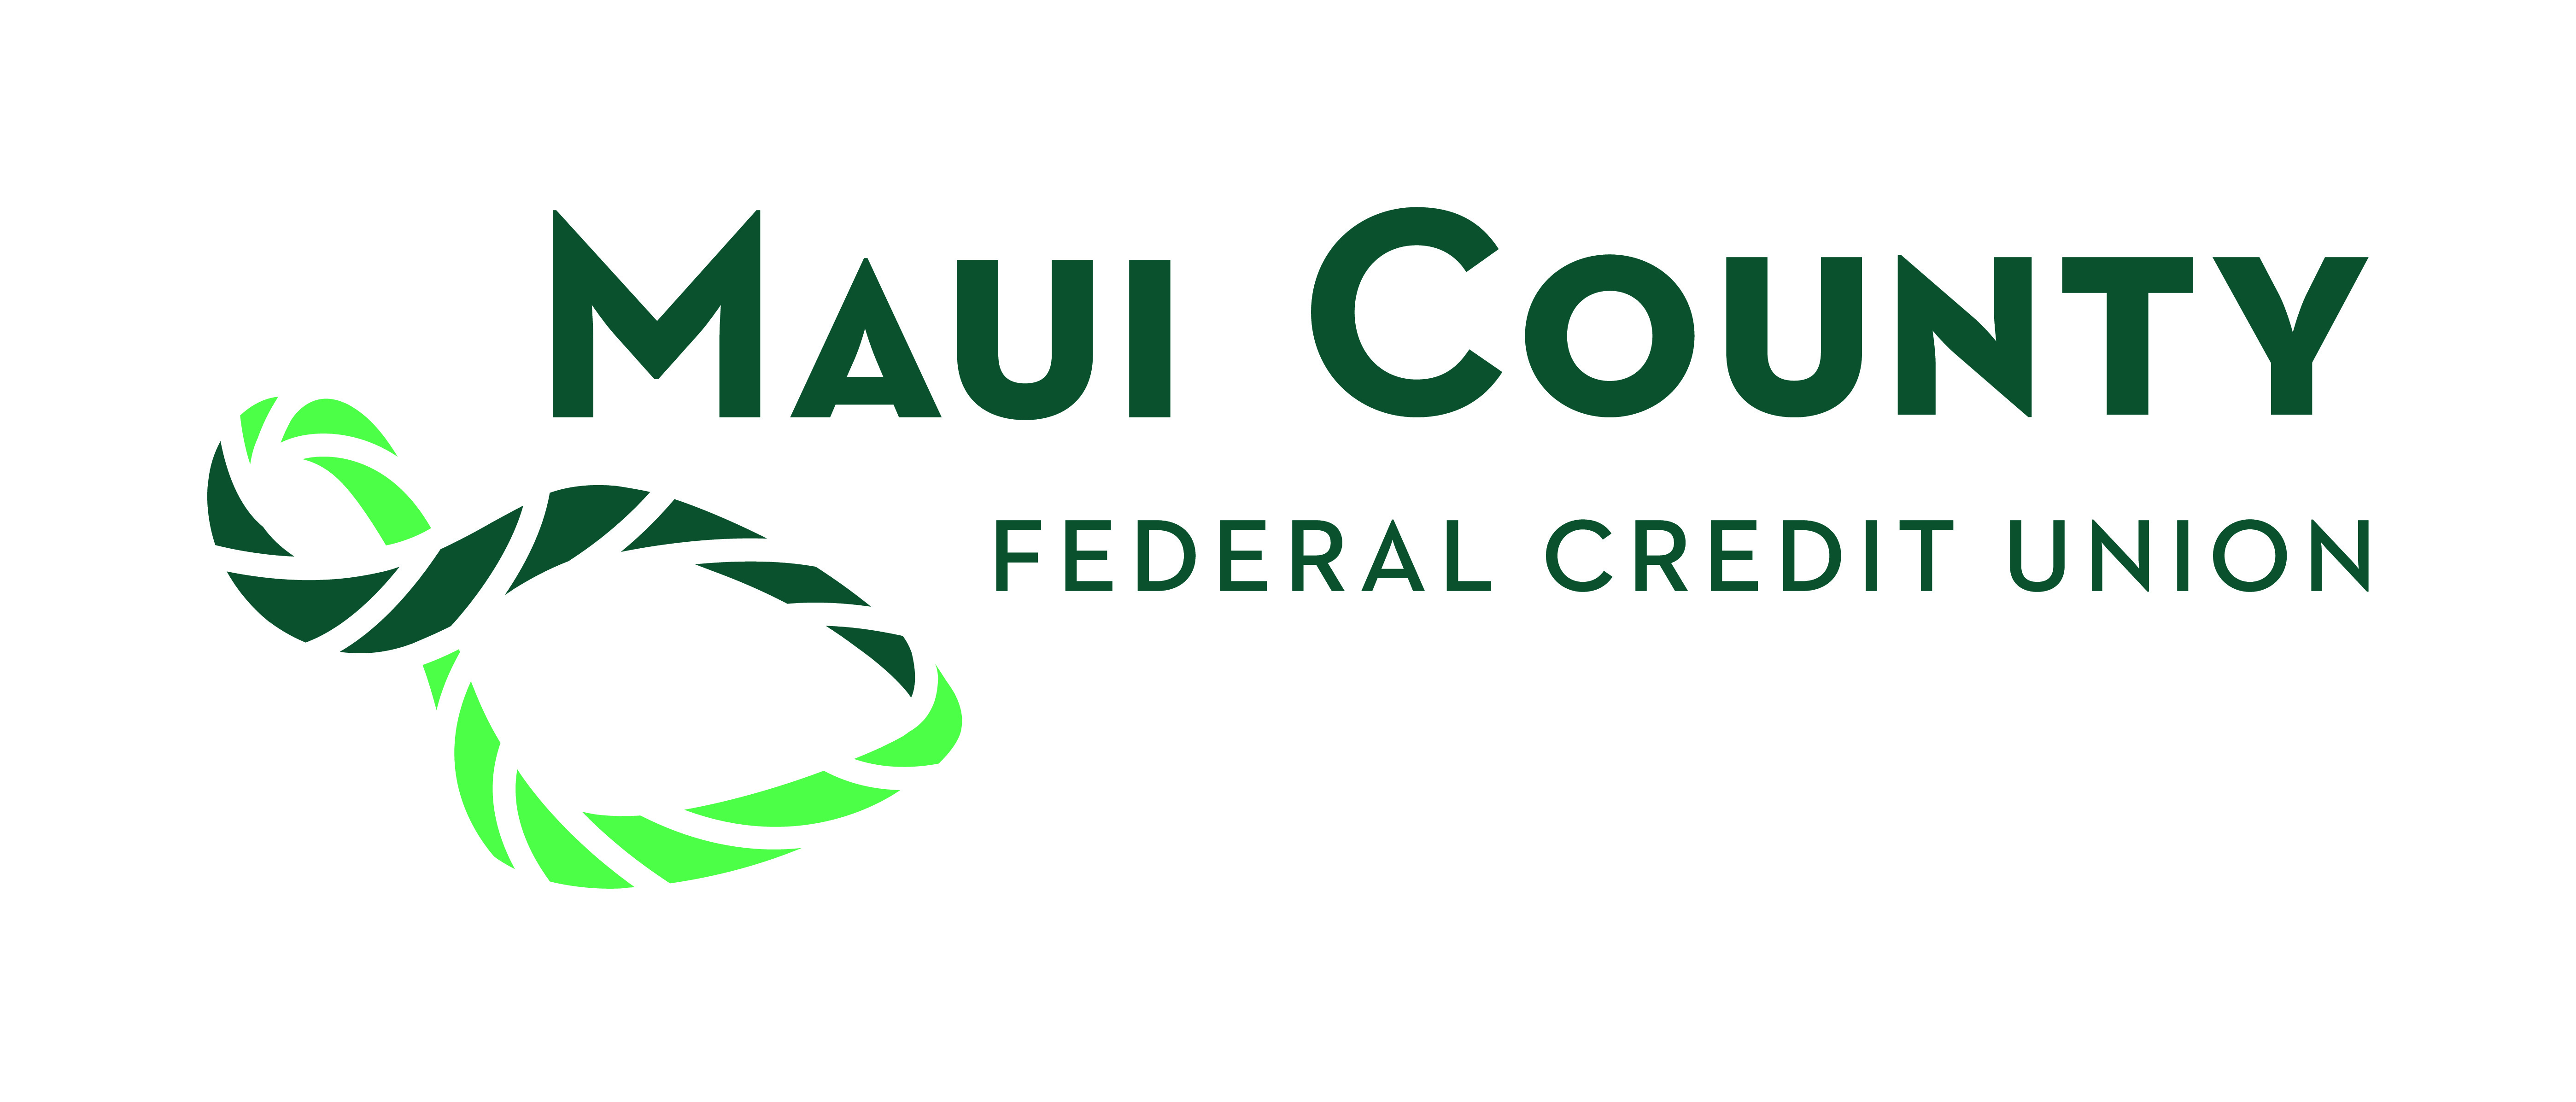 4. Cooperativa de crédito federal del condado de Maui (Nivel 4)